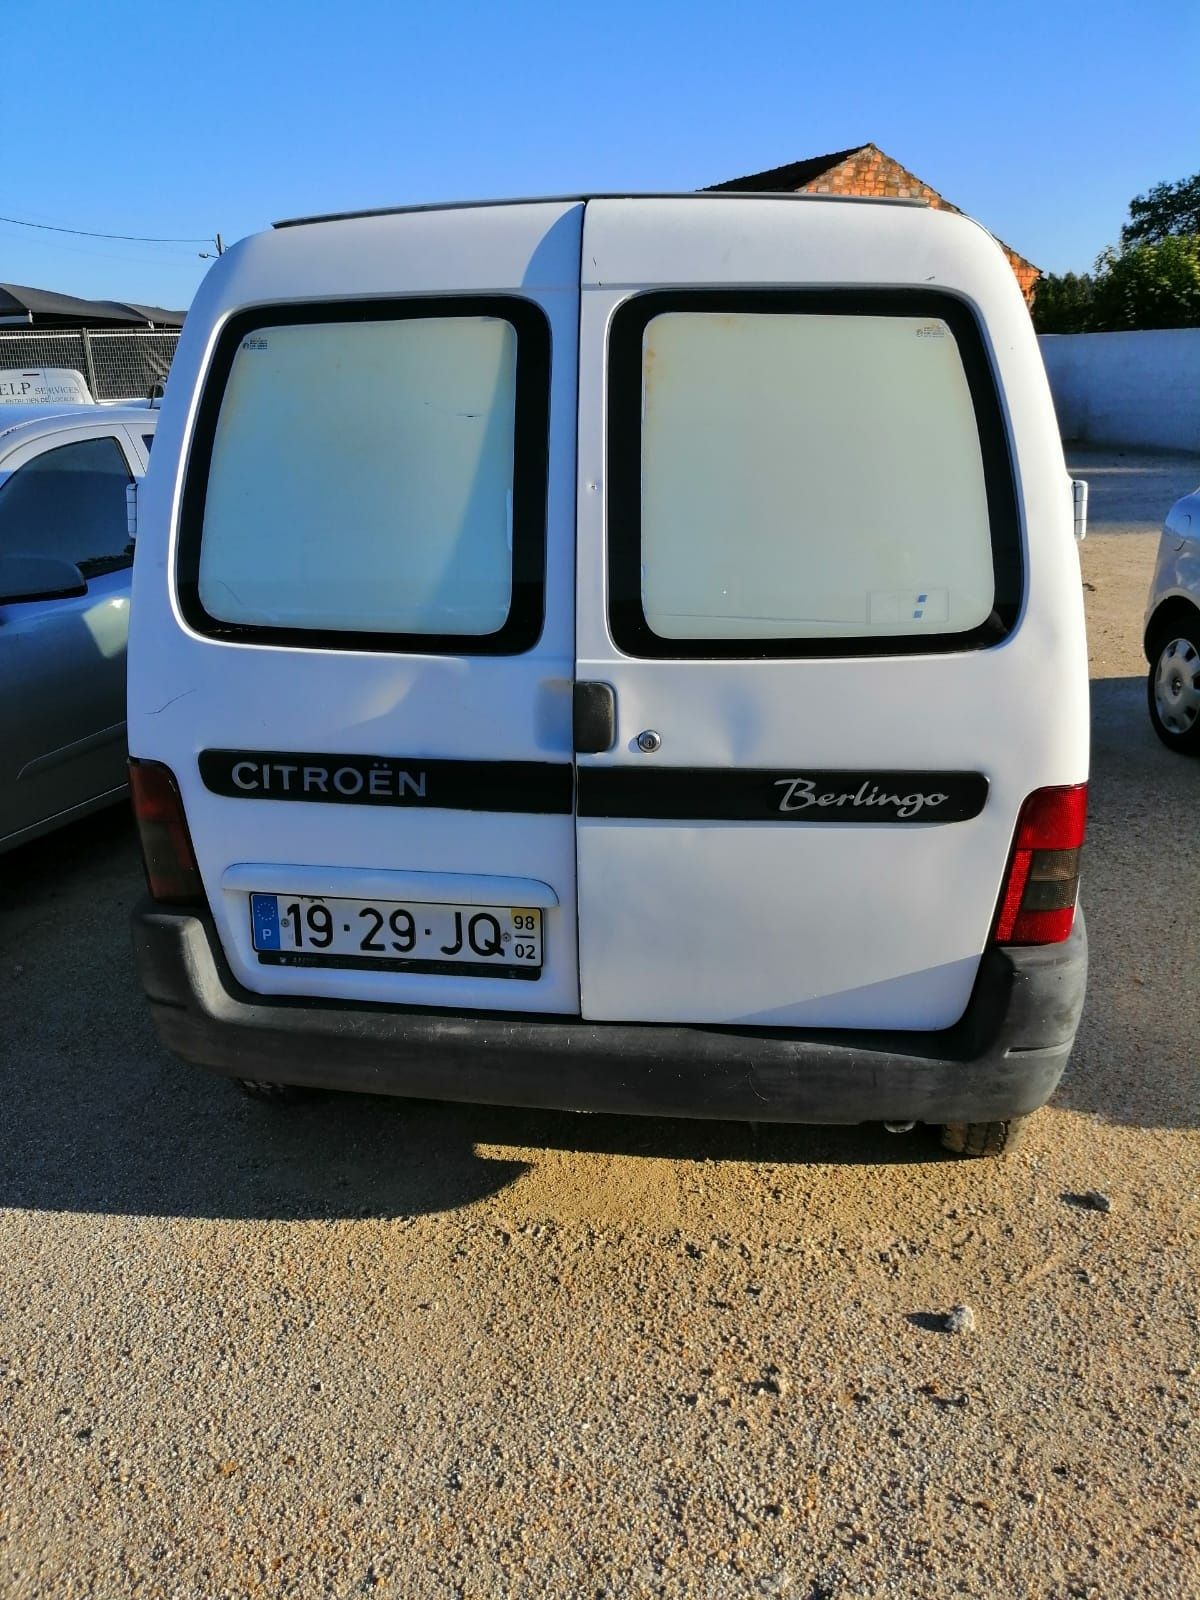 Citroën Berlingo 1.9d para peças. Motor, caixa, frente completa